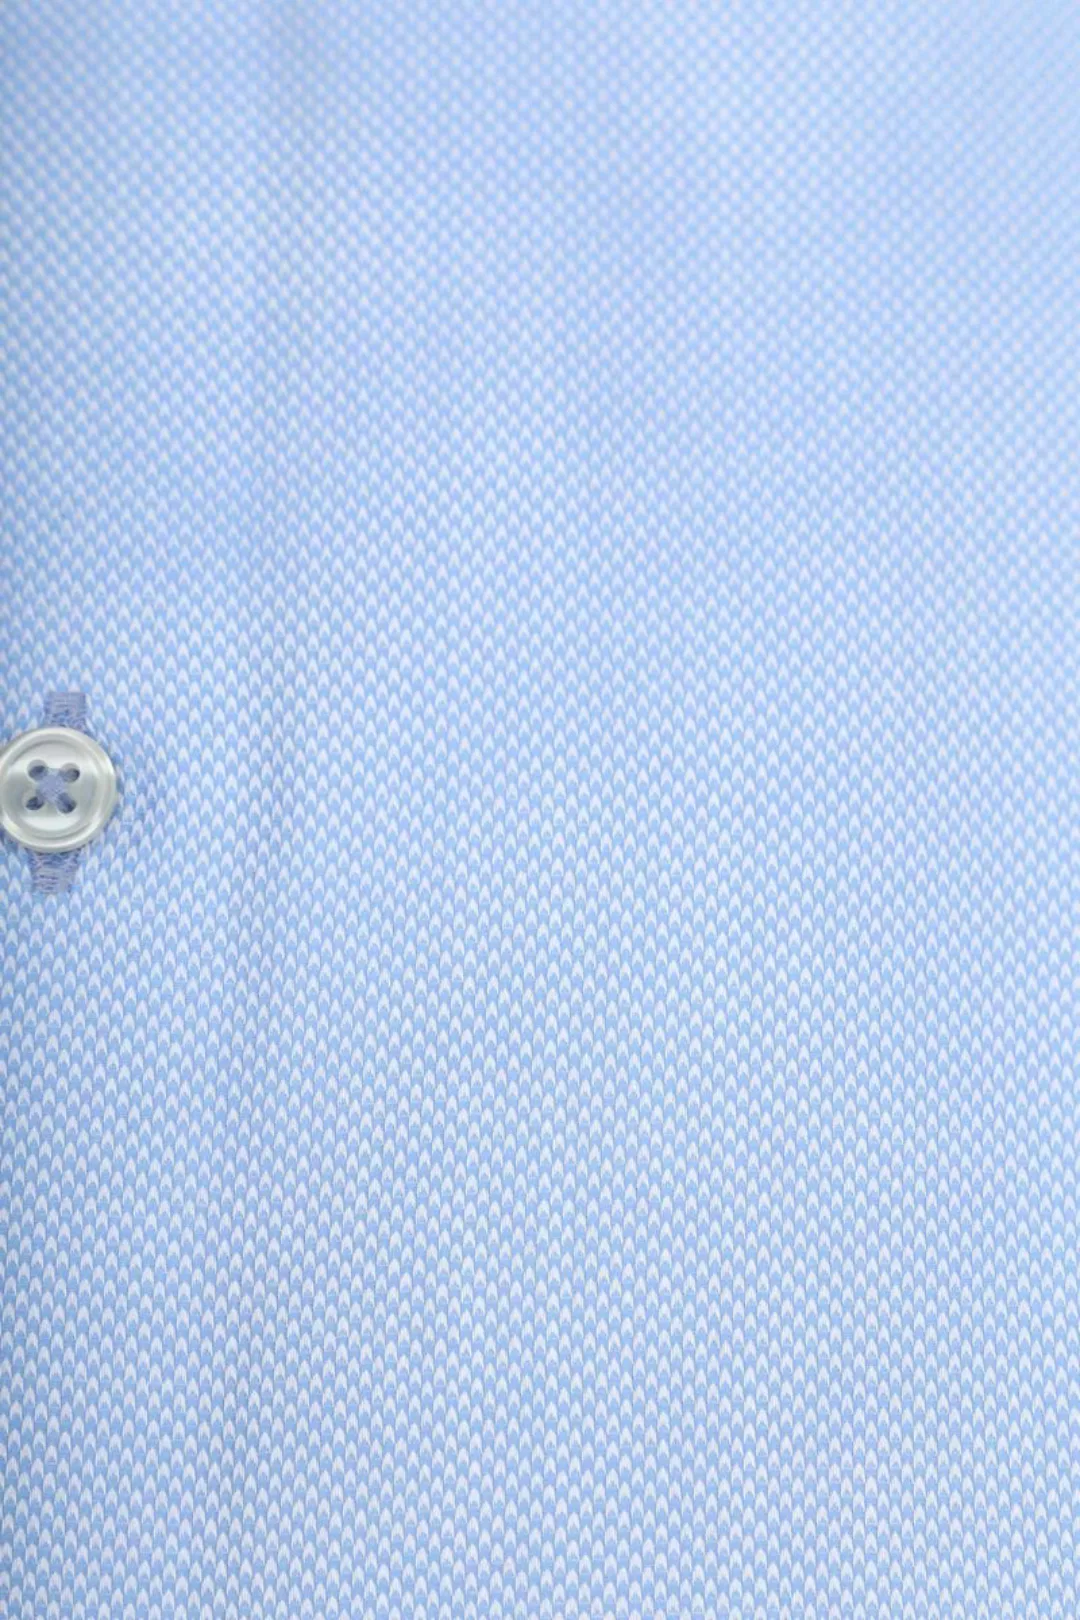 Suitable Non Iron Hemd Blau - Größe 38 günstig online kaufen